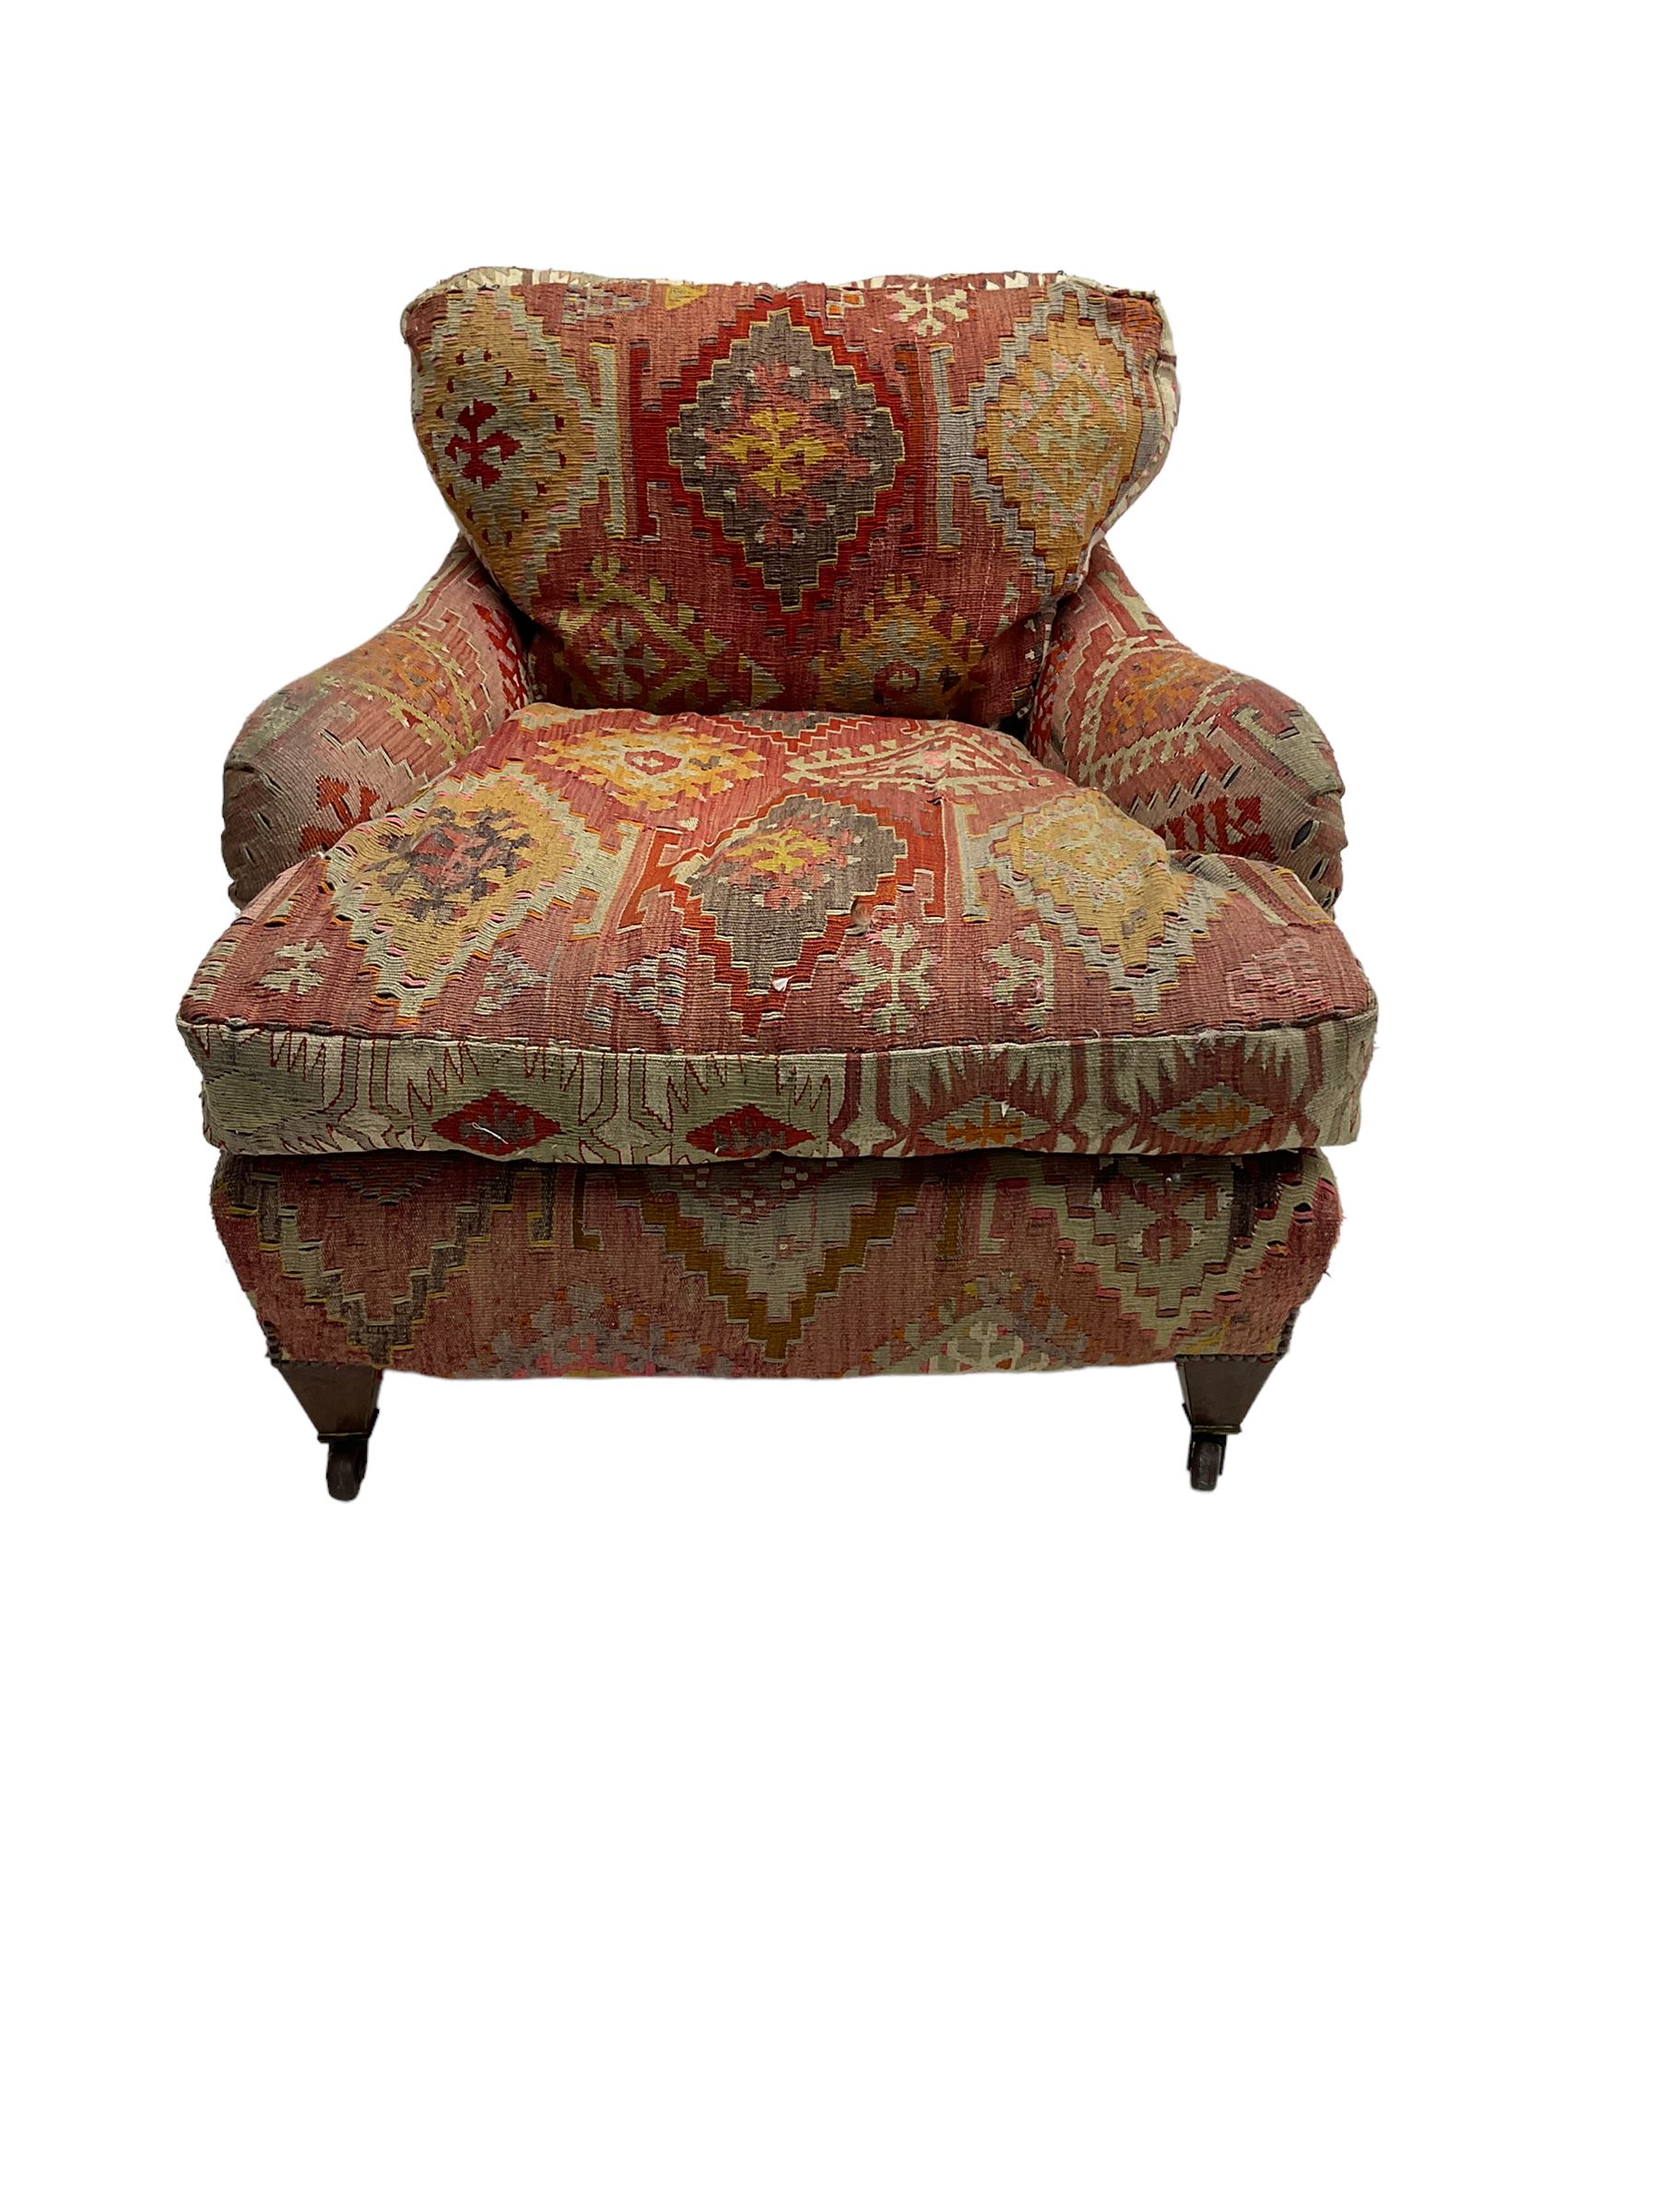 Early 20th century Howard style armchair